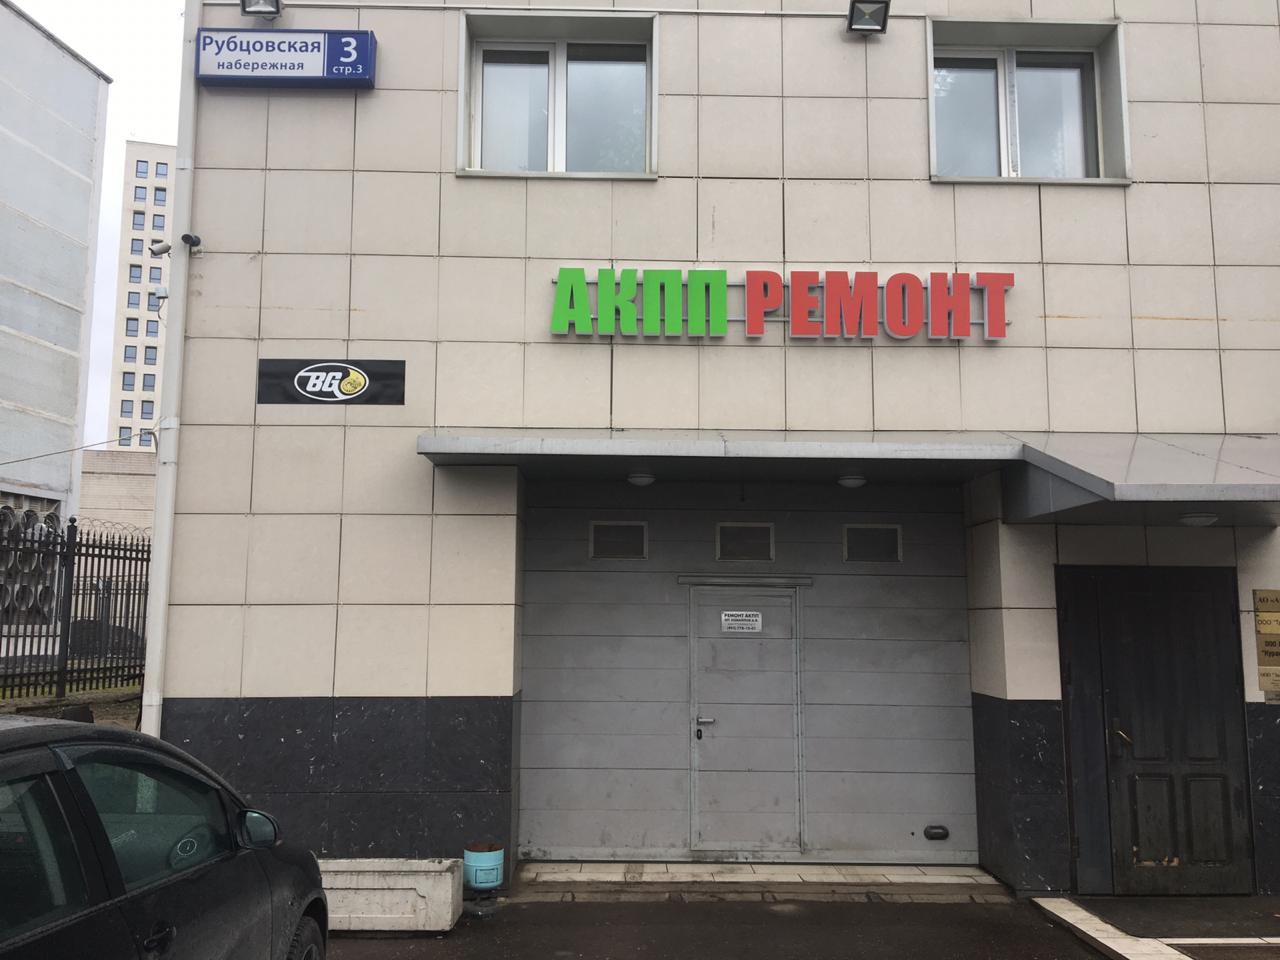 Центр по ремонту АКПП, Рубцовская Набережная, 3 ст3